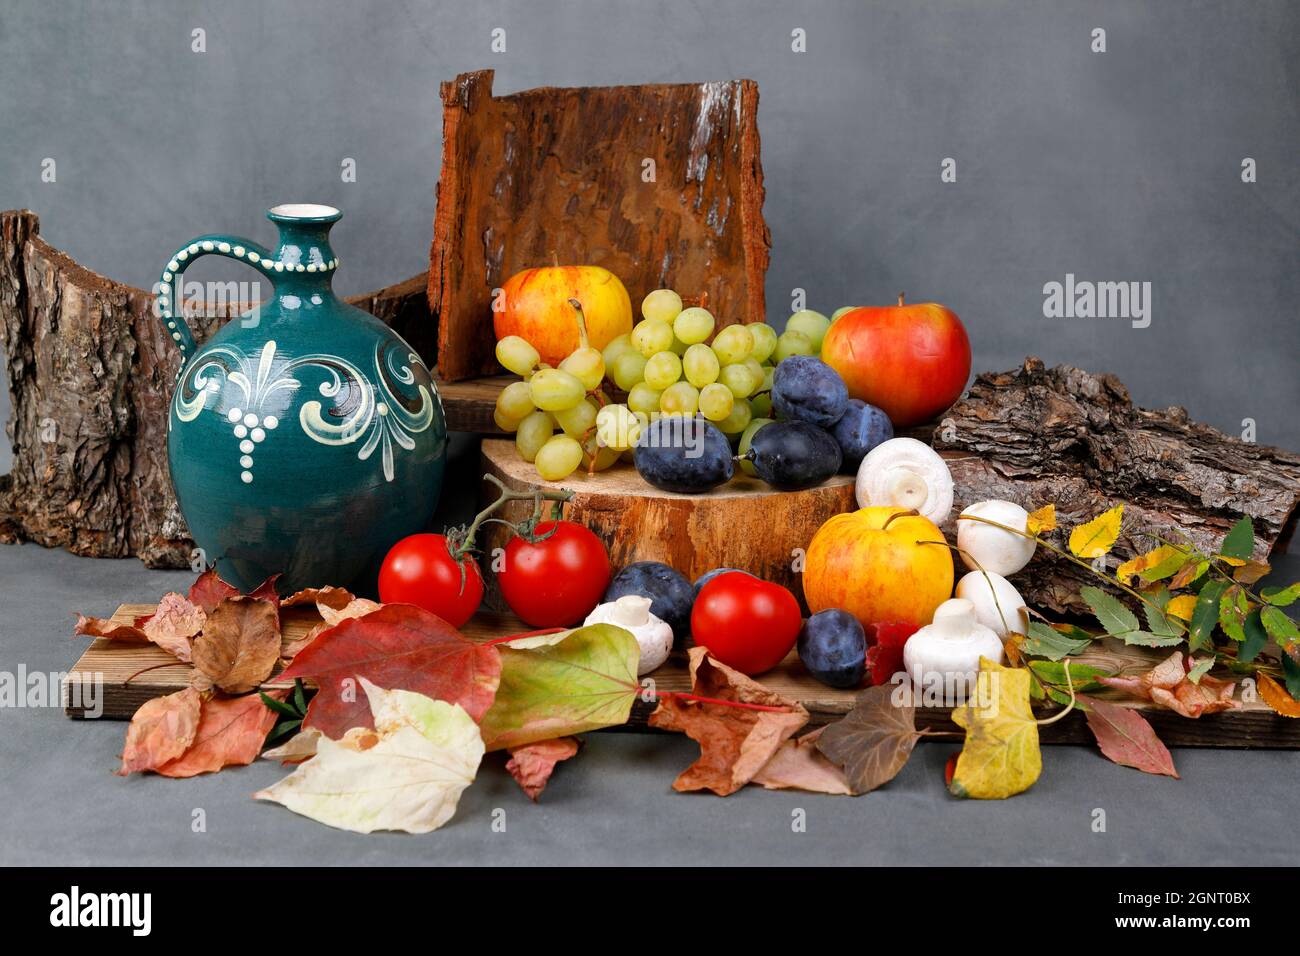 La vie encore à l'automne avec des fruits, des feuilles et une verseuse traditionnelle Banque D'Images